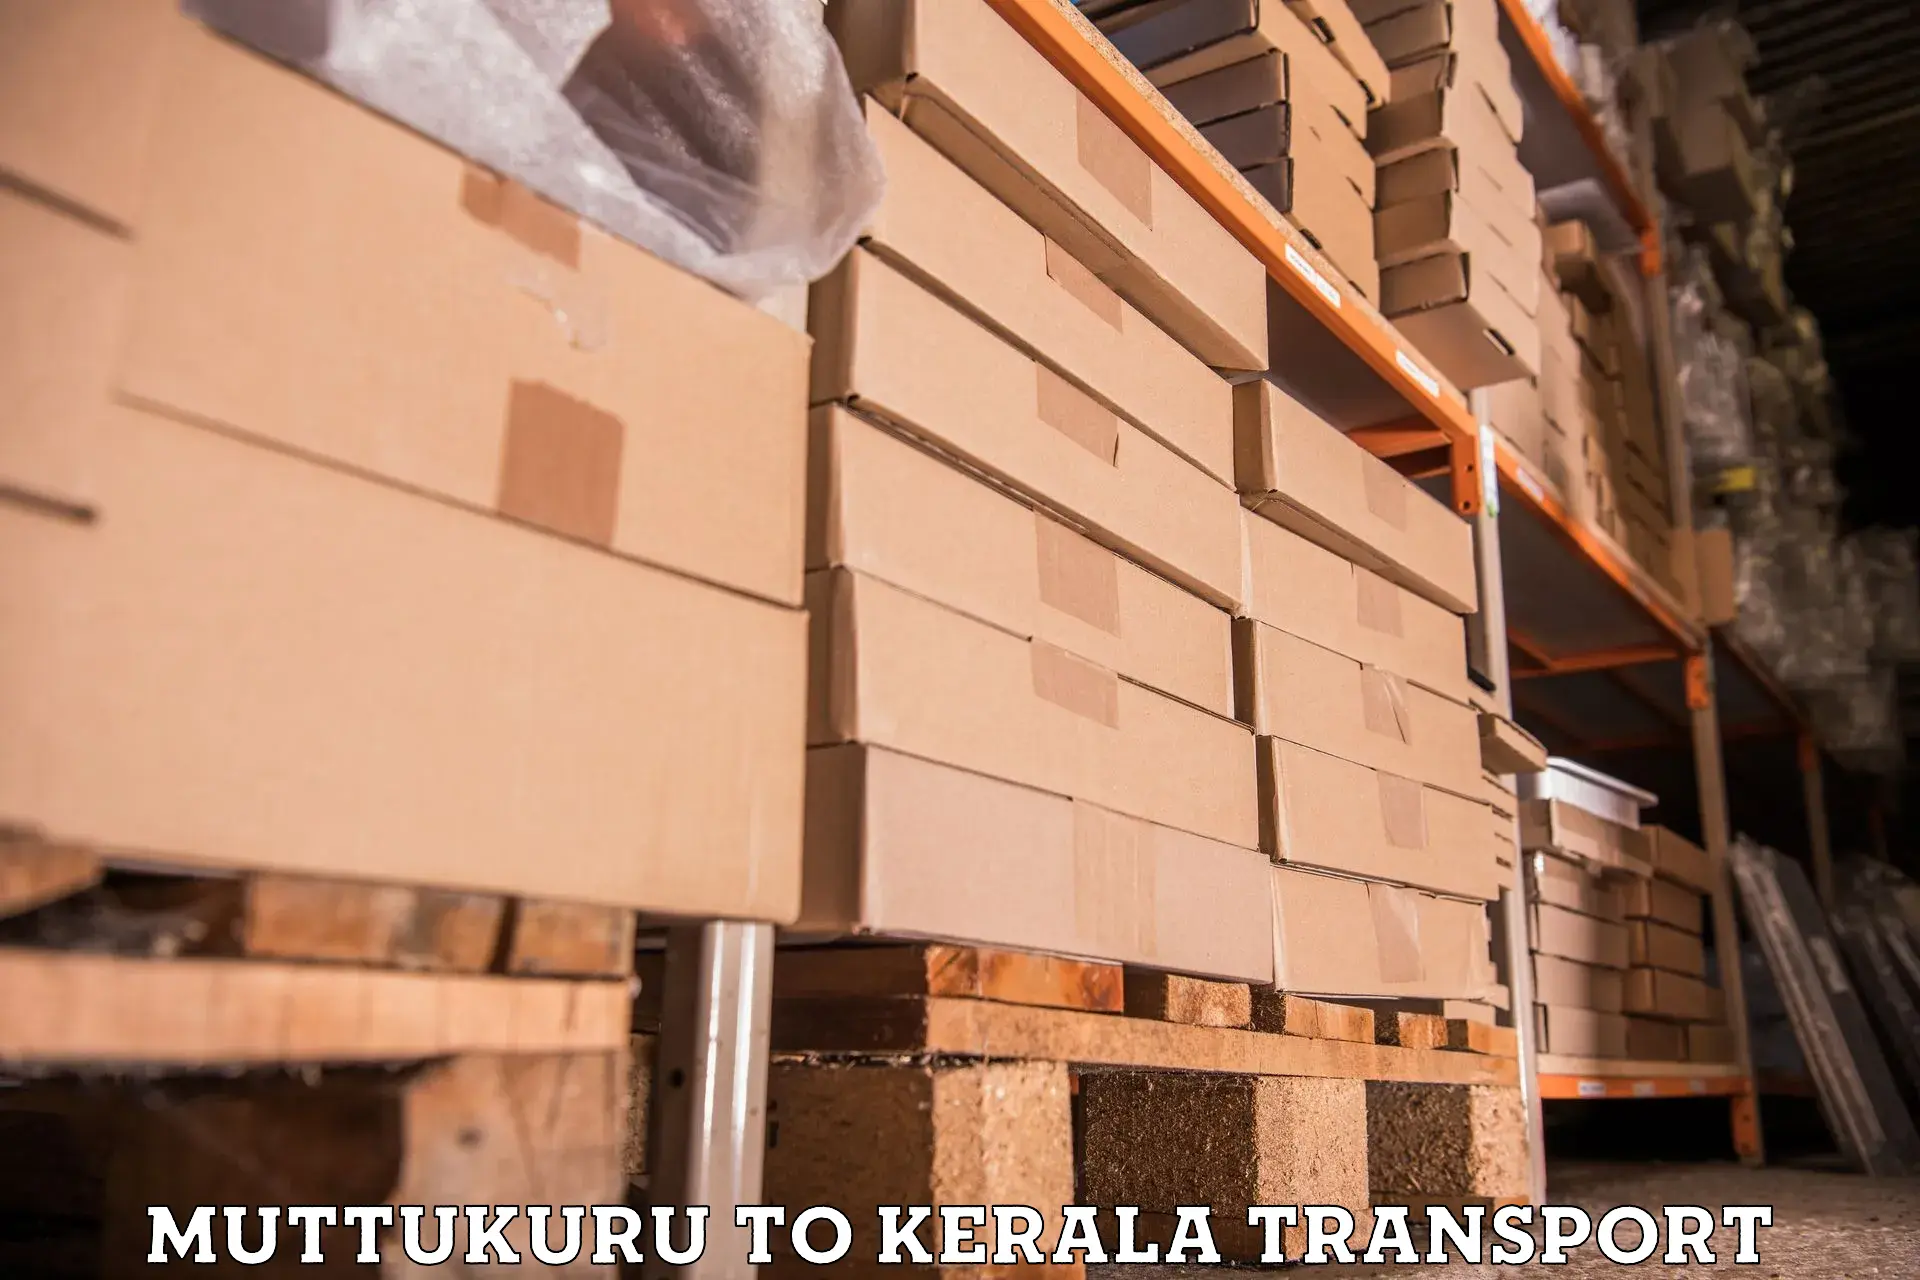 Road transport online services Muttukuru to Perumbavoor